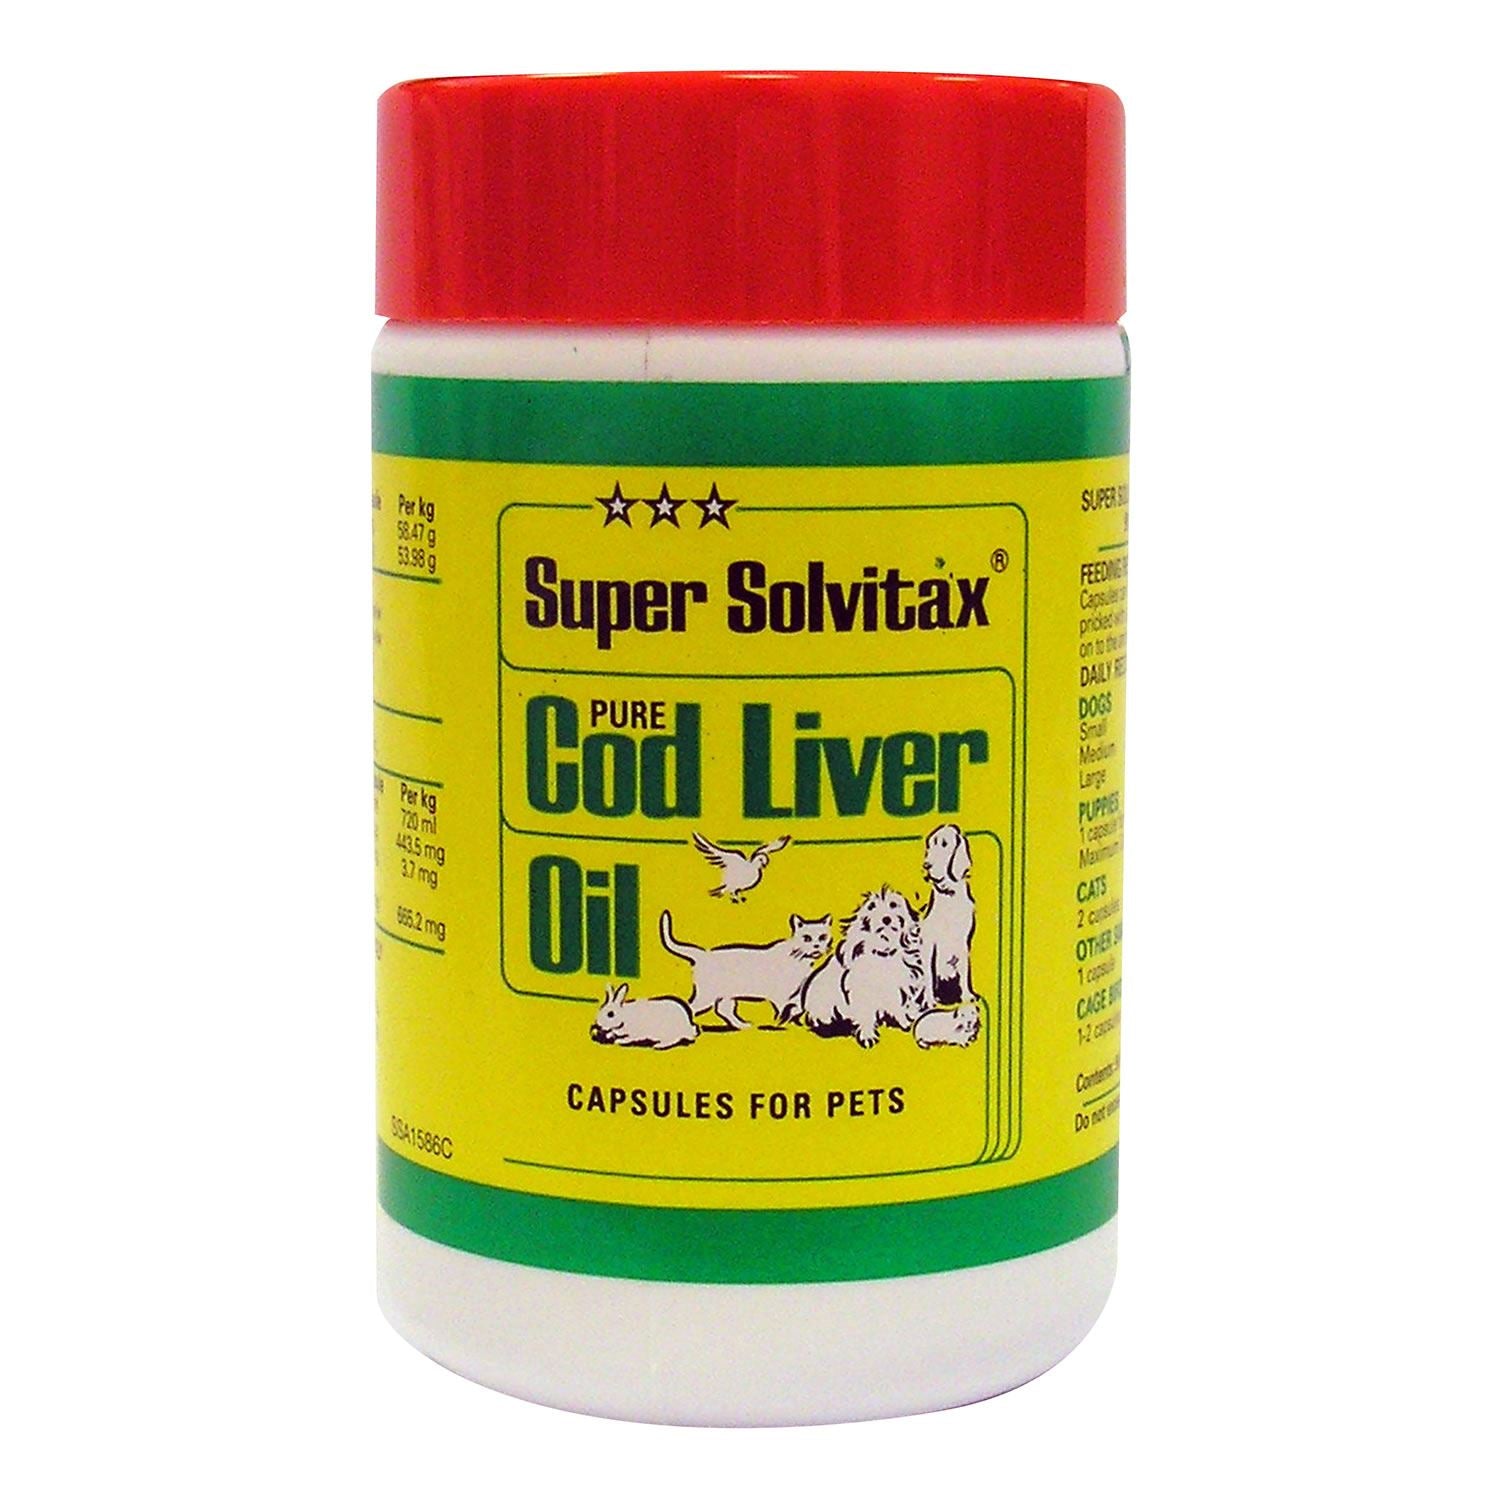 Super Solvitax Cod Liver Oil Capsules - Just Horse Riders